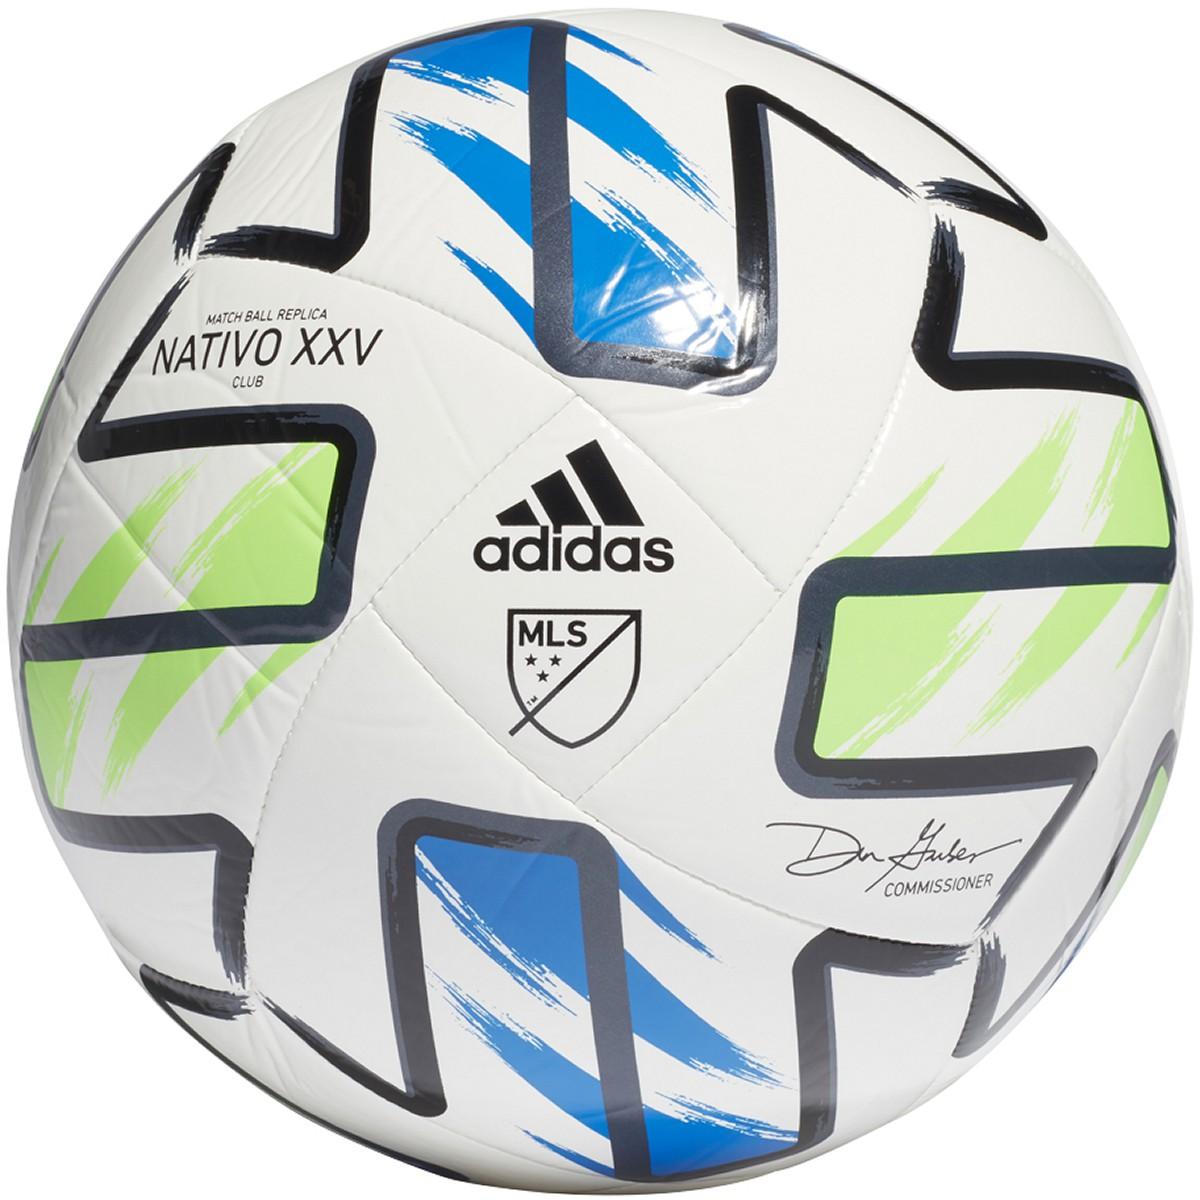 mls official match ball 2020